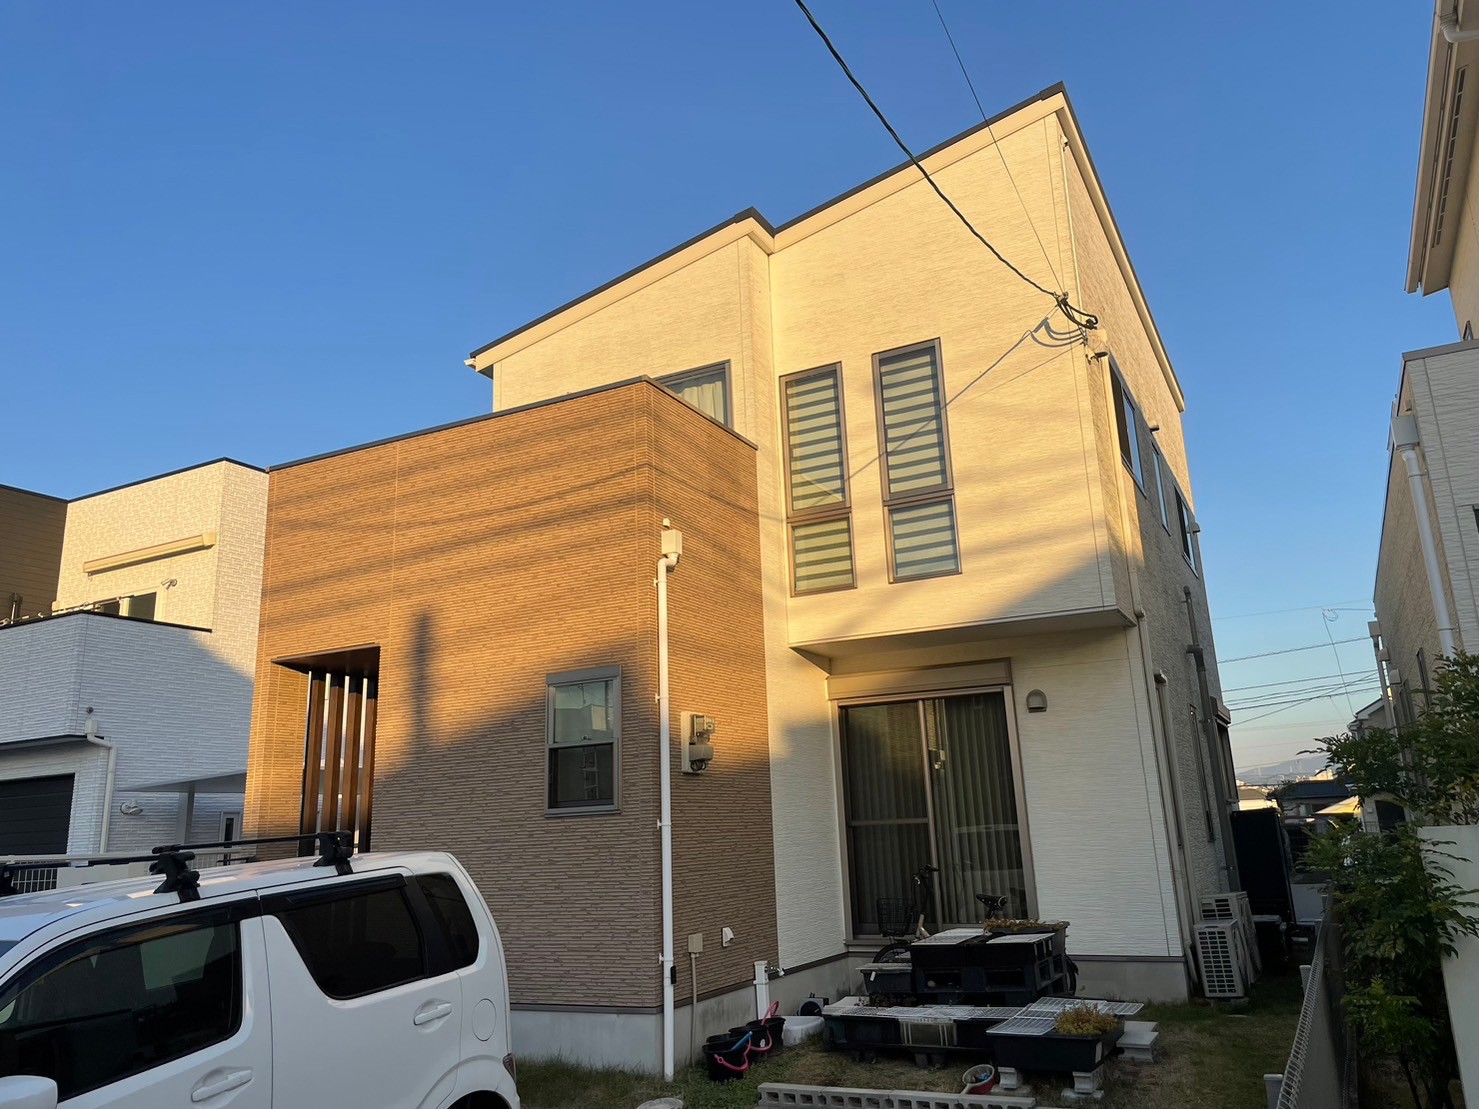 福岡県太宰府市都府楼南のT様邸で屋根外壁共に高耐久フッ素塗料のエシカルプロクールFを使用し、安心の塗装工事を行いました。1/25完成です。【ホームページより】